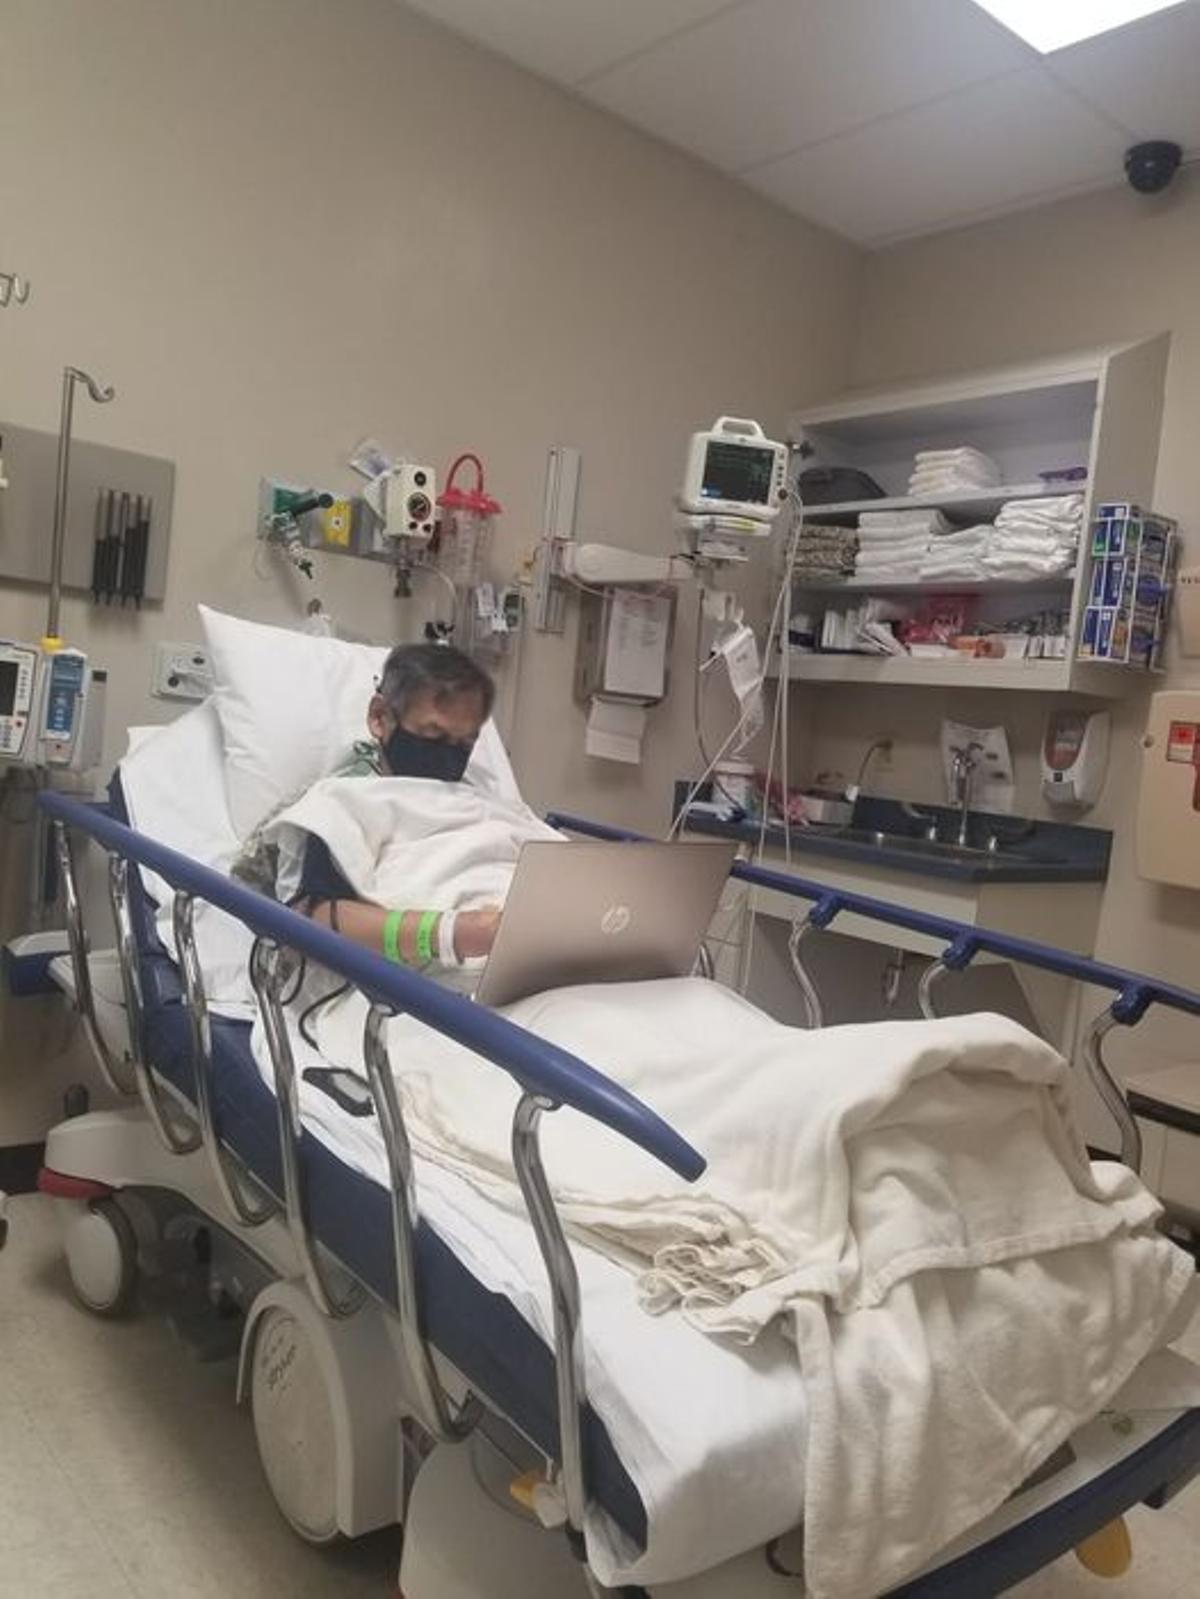 La imatge d’un professor que corregeix exàmens a l’hospital un dia abans de morir es torna viral